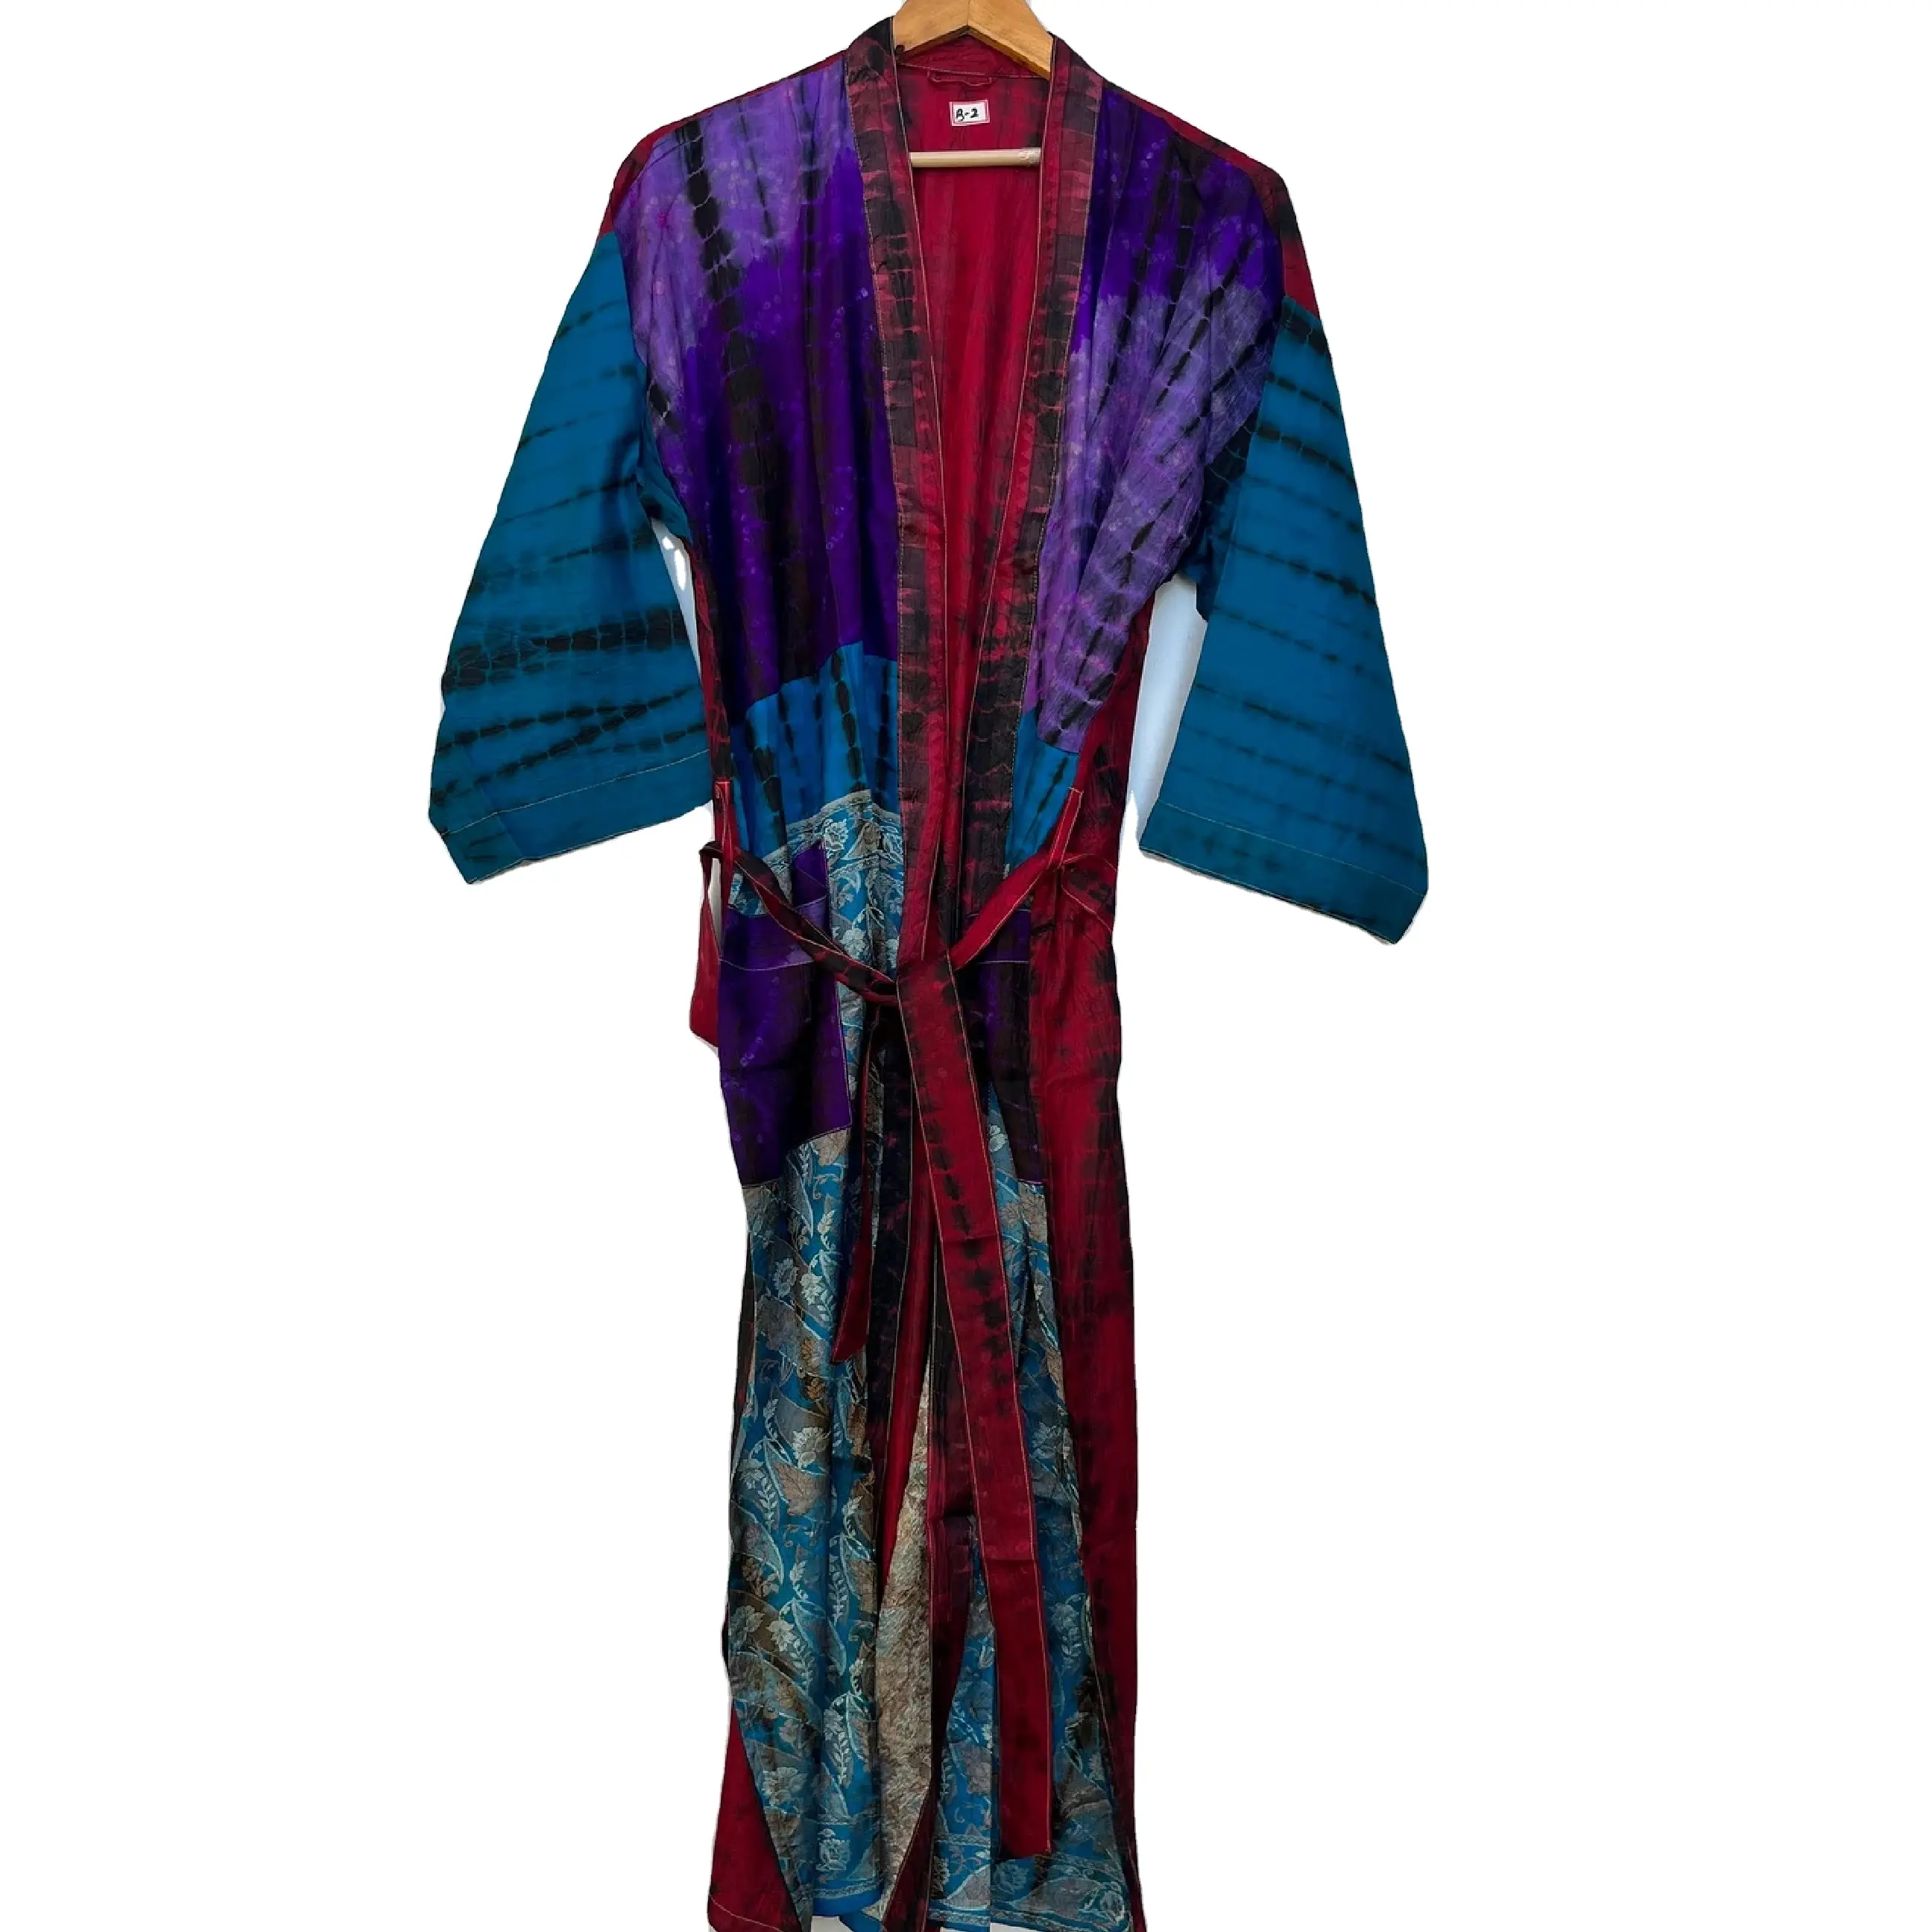 Bestseller Handmade Tie Dye Seide Sari Robe Indische Vintage Kimono Sommerkleid Kleid Brautkleid